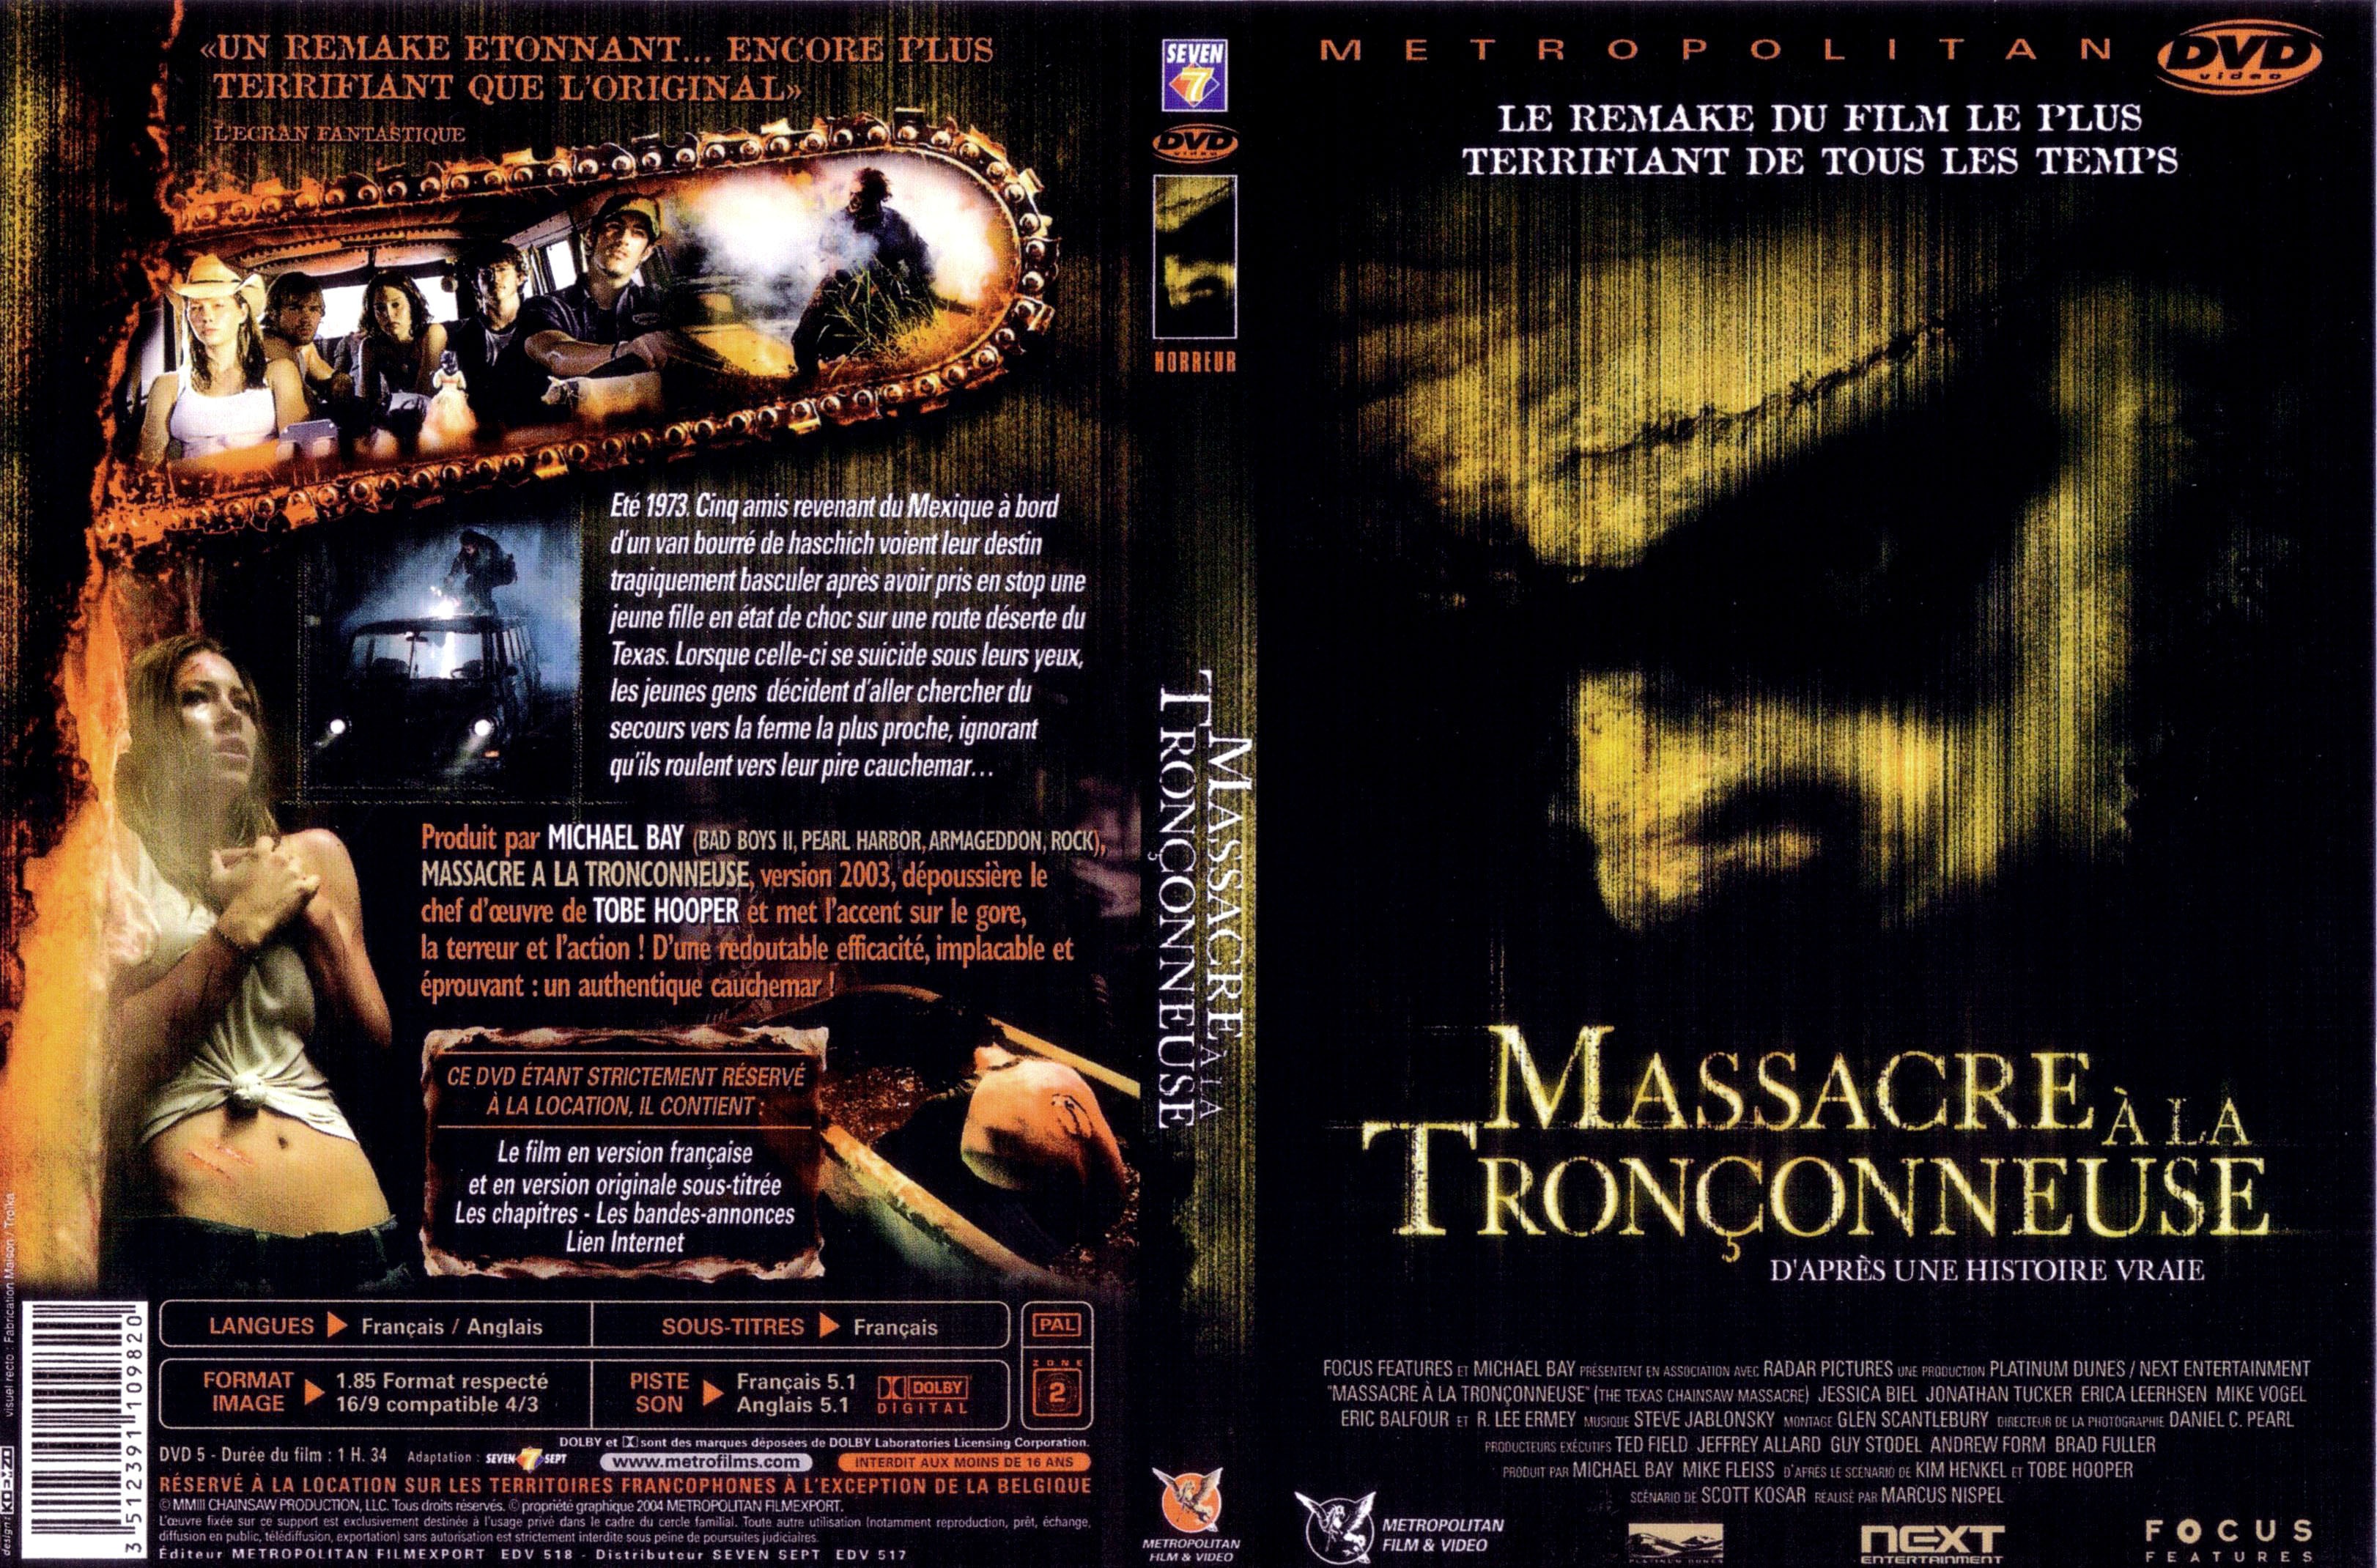 Jaquette DVD Massacre  la trononneuse 2003